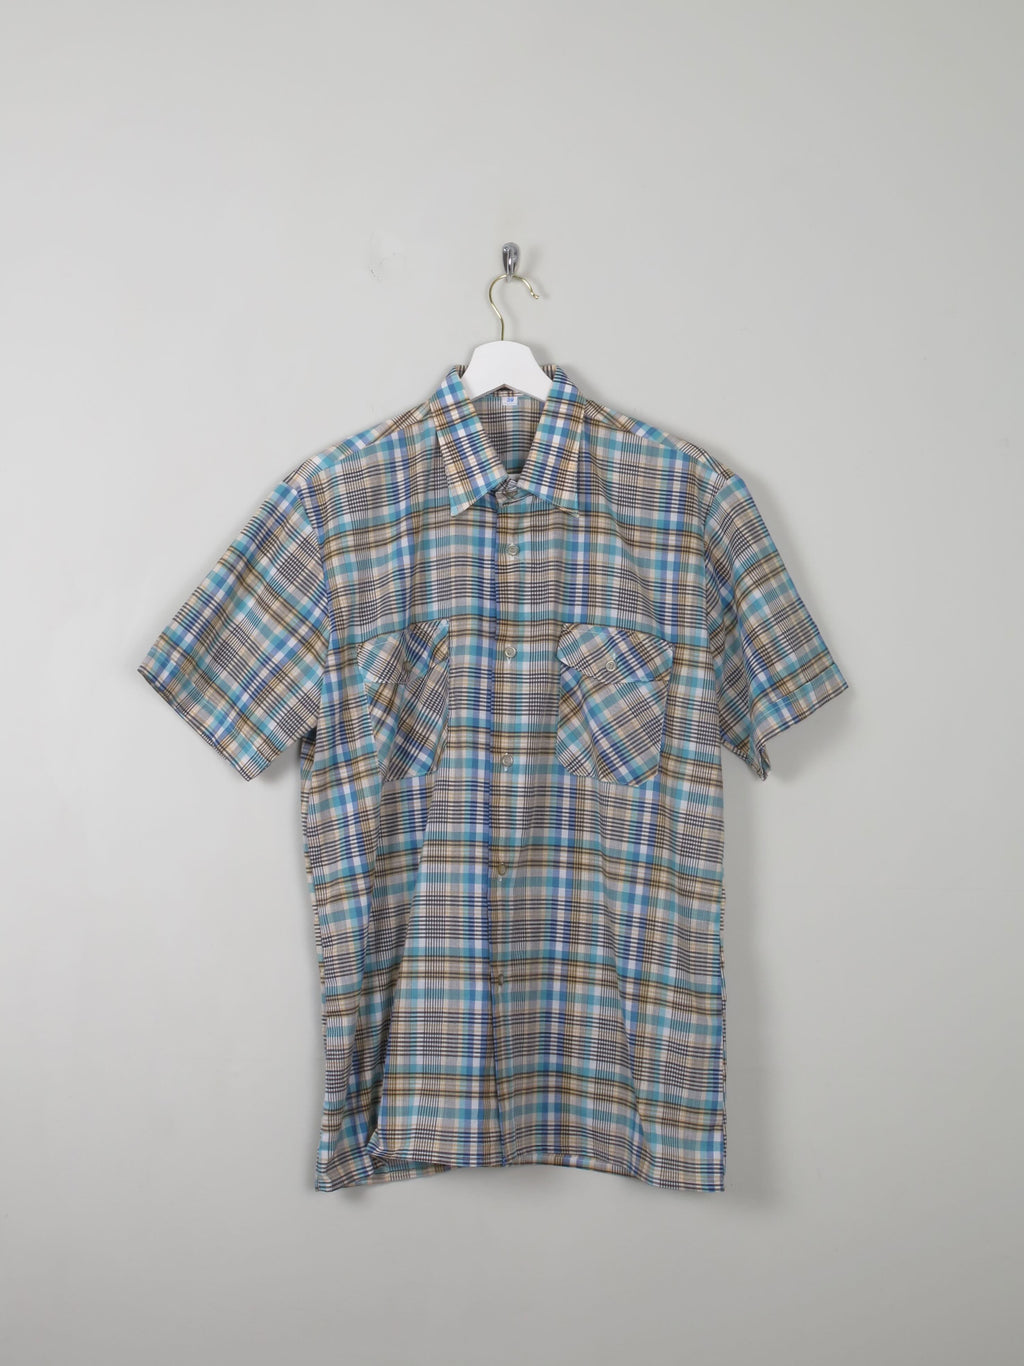 Men's Vintage Check Shirt L - The Harlequin